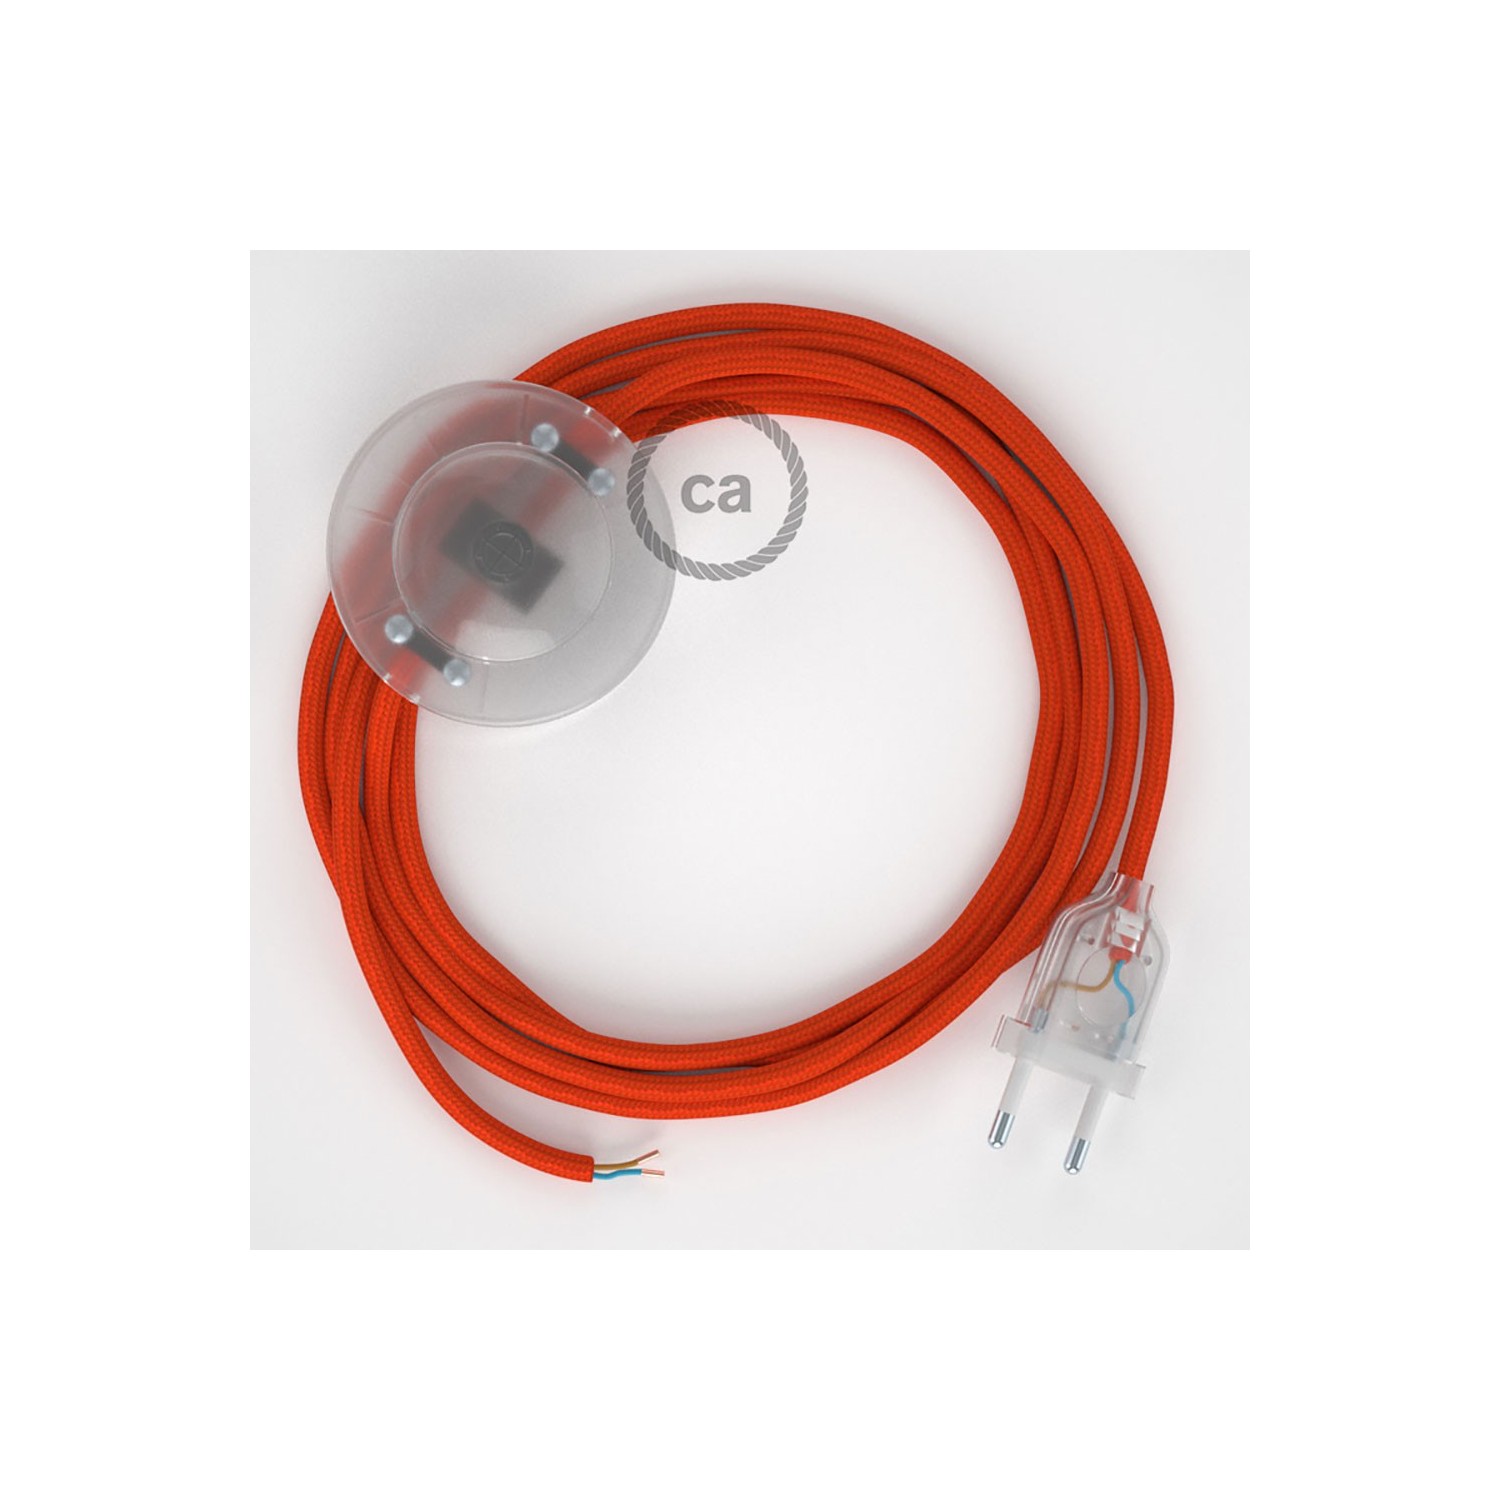 Stehleuchte Anschlussleitung RM15 Orange Seideneffekt 3 m. Wählen Sie aus drei Farben bei Schalter und Stecke.